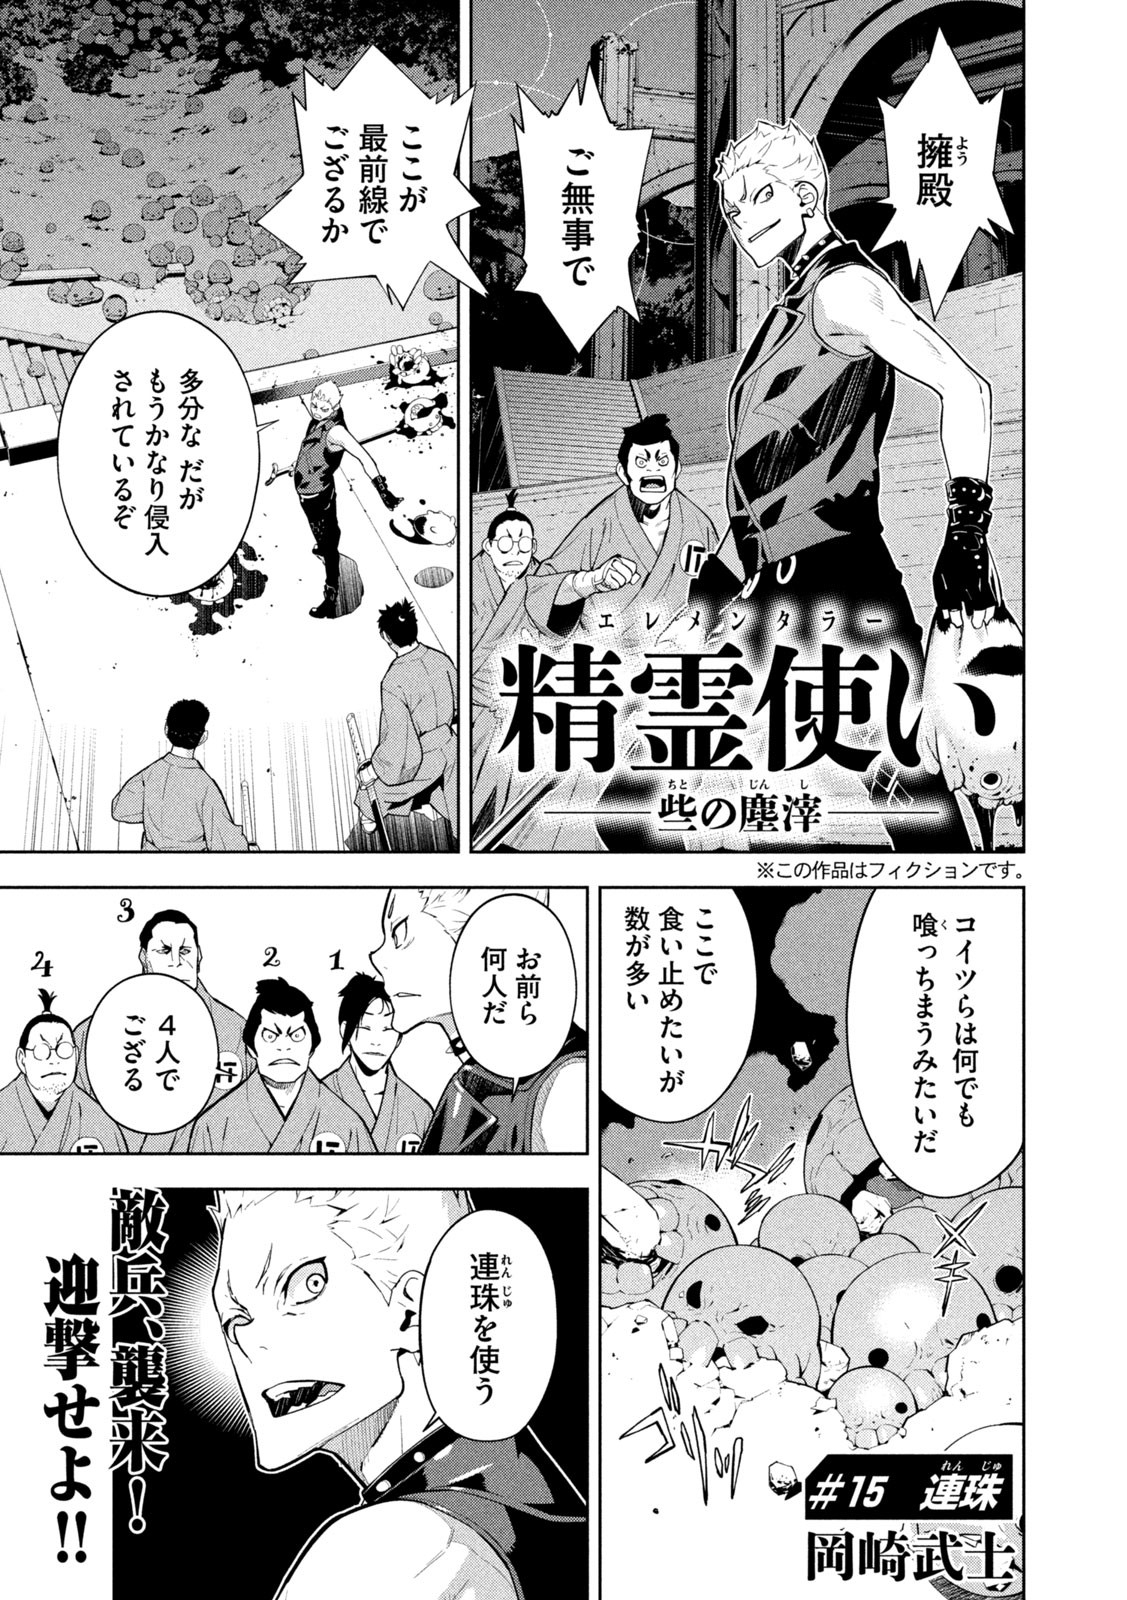 Seirei Tsukai – Chito no Jinshi - Chapter 15 - Page 1